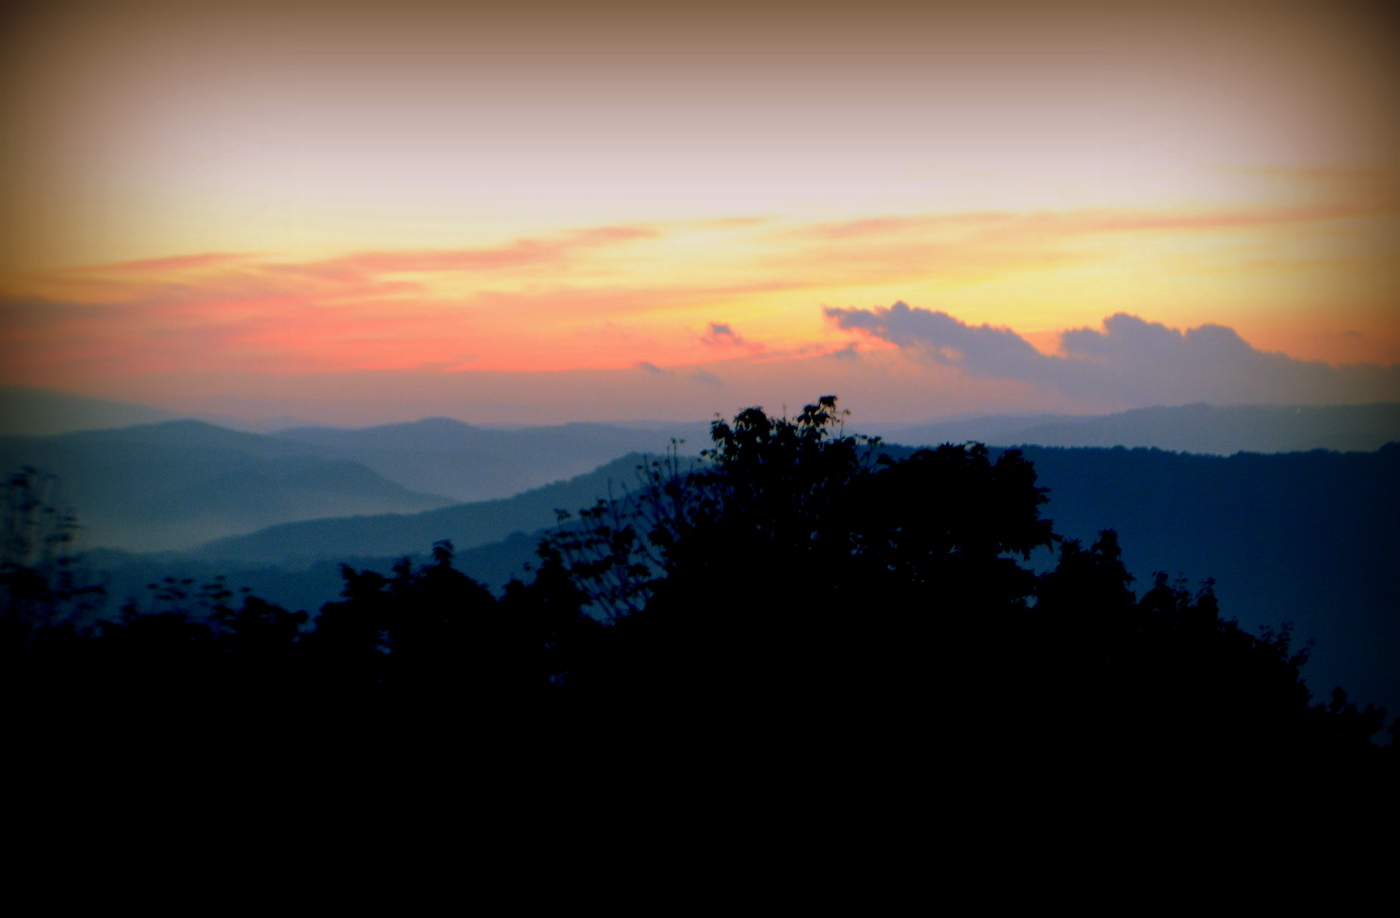 Sunset Behind WV Mountains
(Taken by Richard Flanigan)